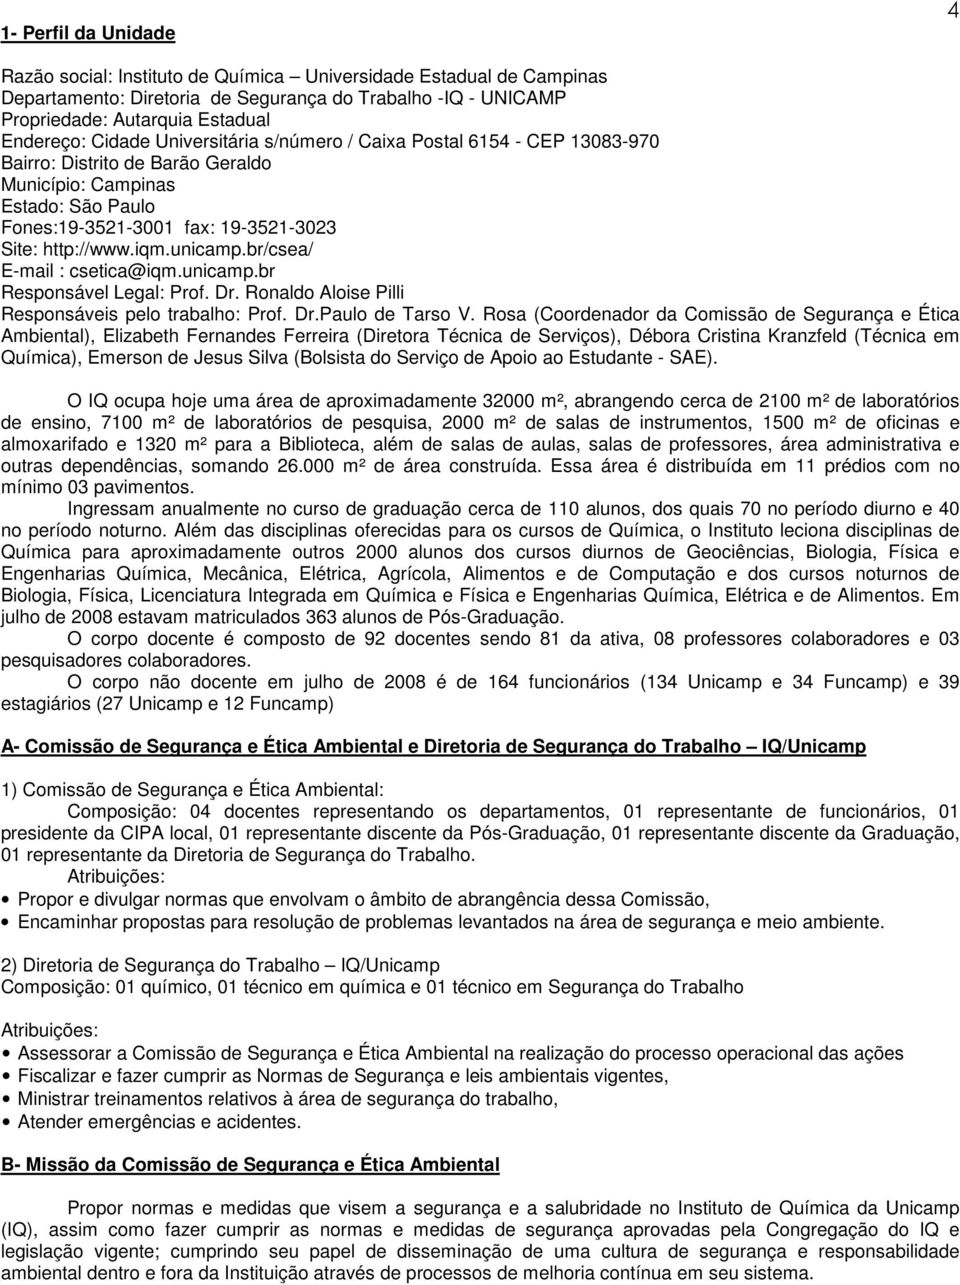 unicamp.br/csea/ E-mail : csetica@iqm.unicamp.br Responsável Legal: Prof. Dr. Ronaldo Aloise Pilli Responsáveis pelo trabalho: Prof. Dr.Paulo de Tarso V.